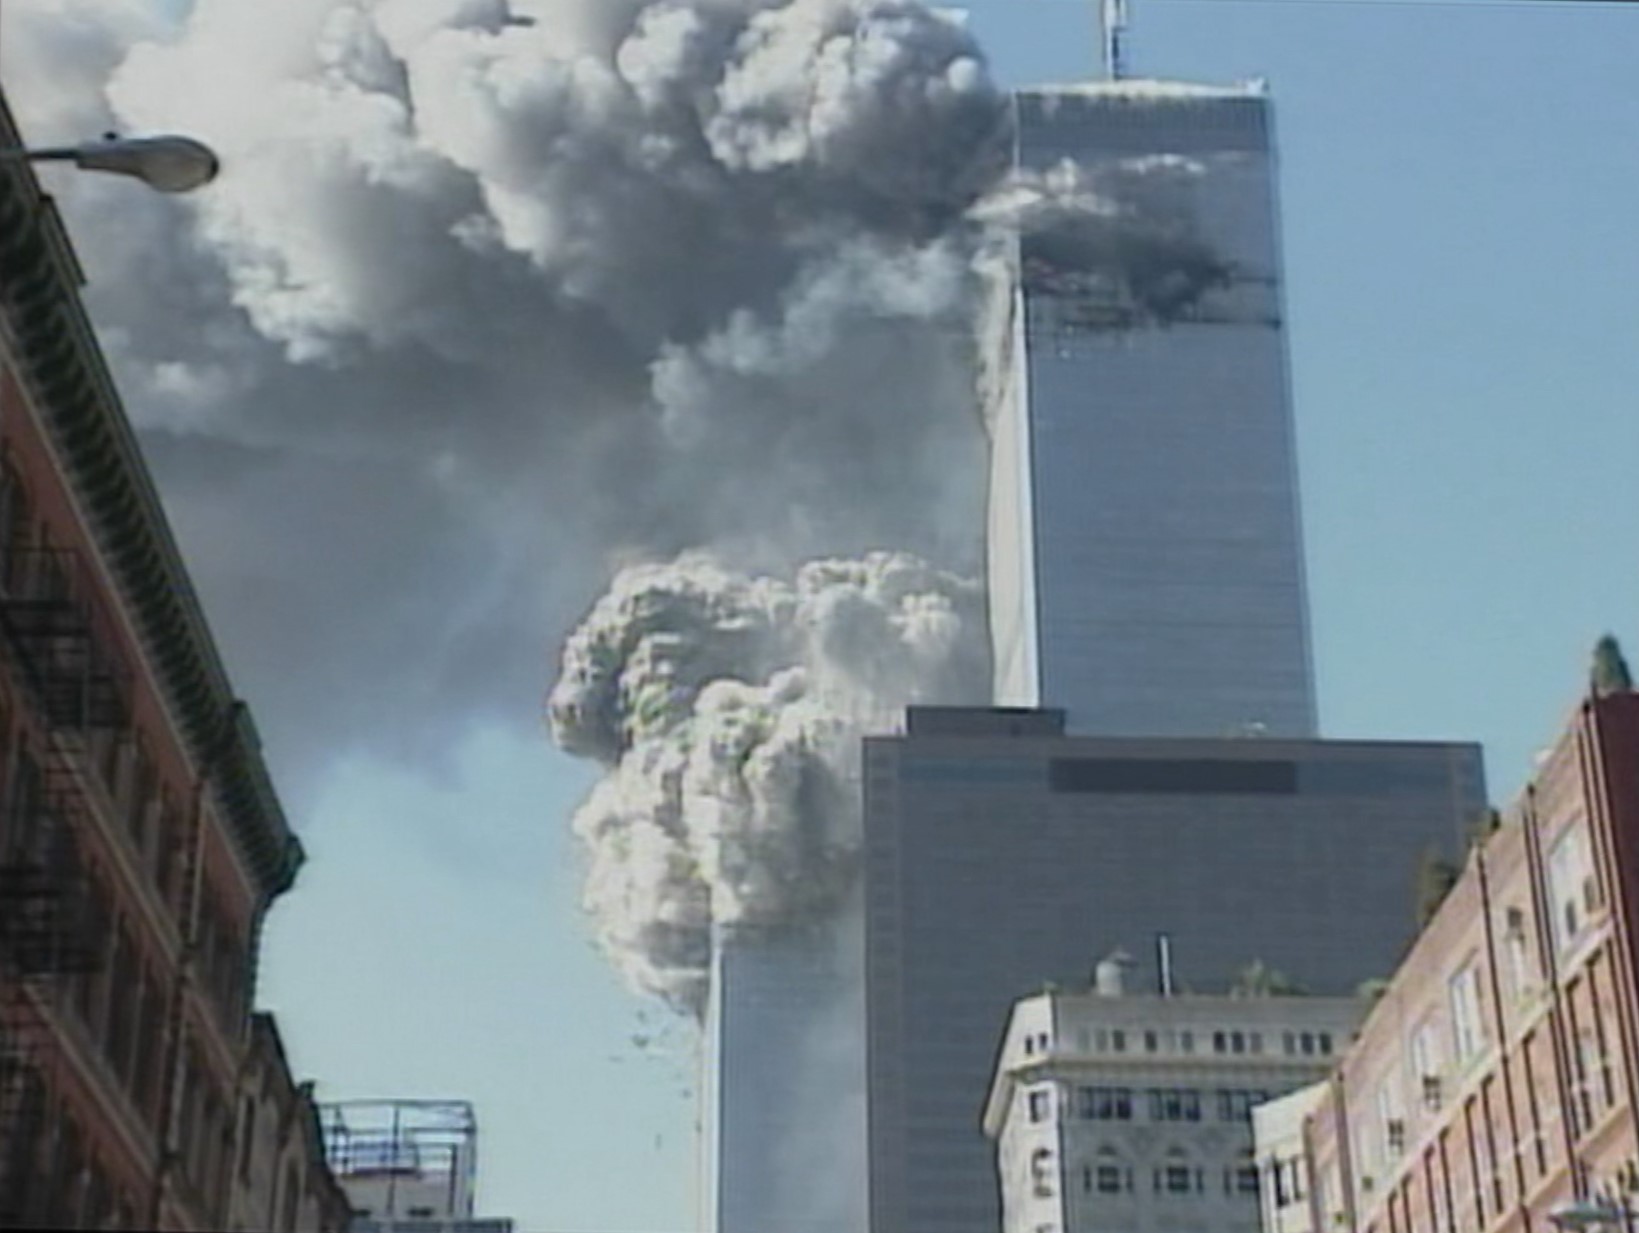 【9.11】米同時多発テロ事件はアメリカの自作自演だった？陰謀説について真実を探る【都市伝説】